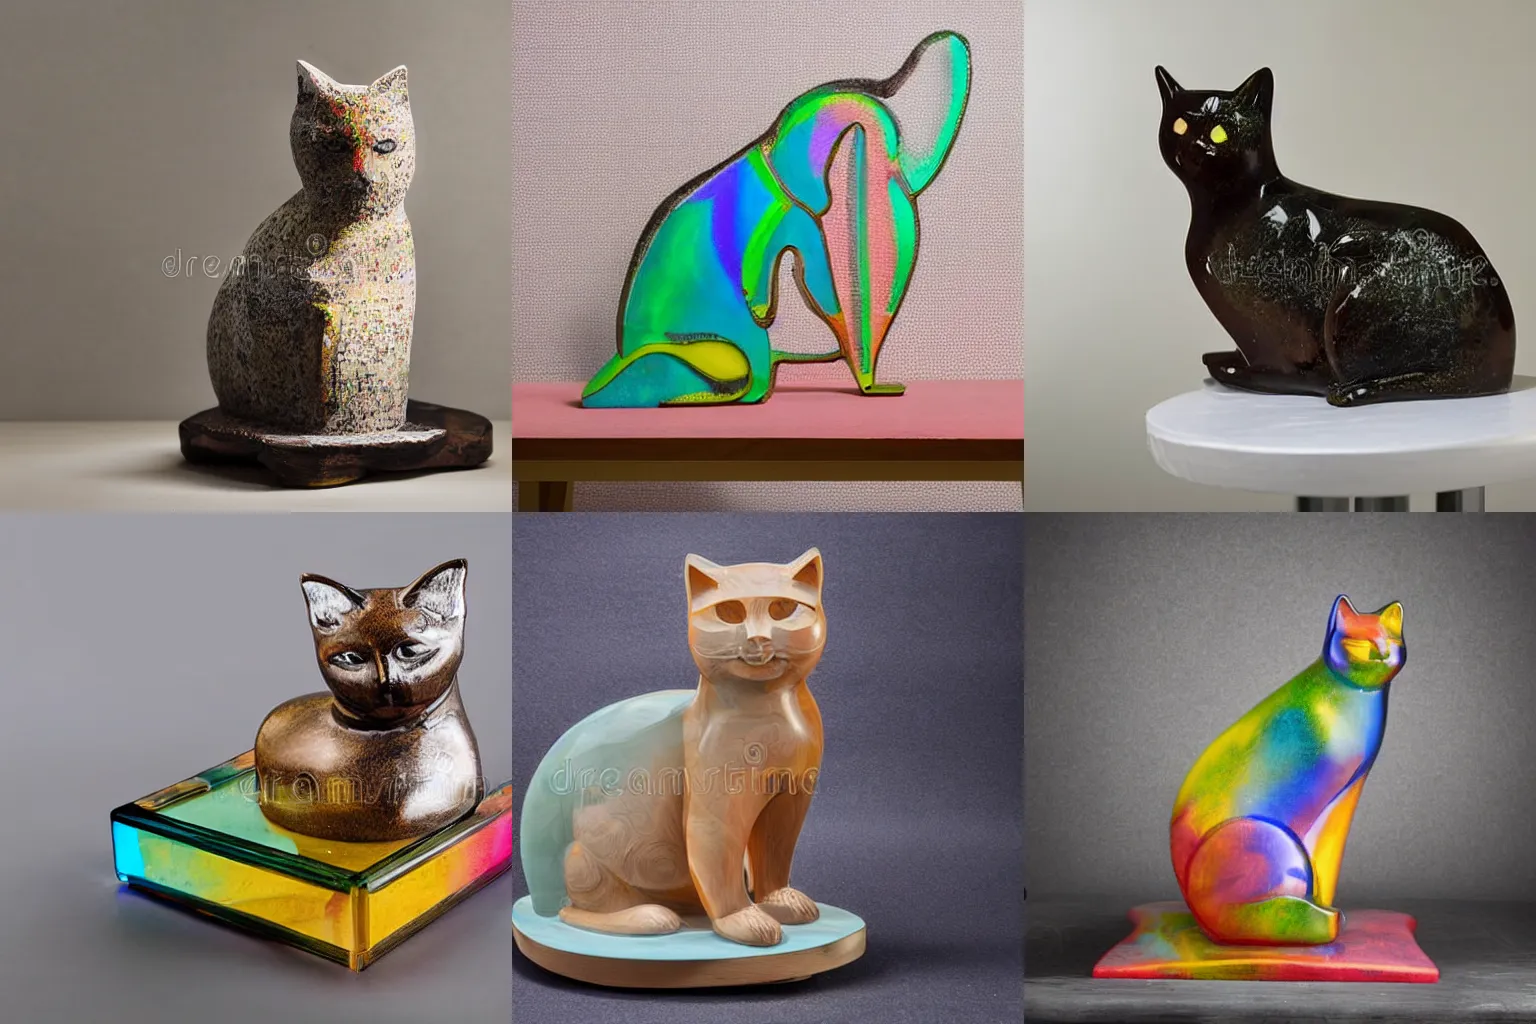 Prompt: une sculpture de chat en verre multicolores sur une table basse en bois blanc, mid-shot, studio photos